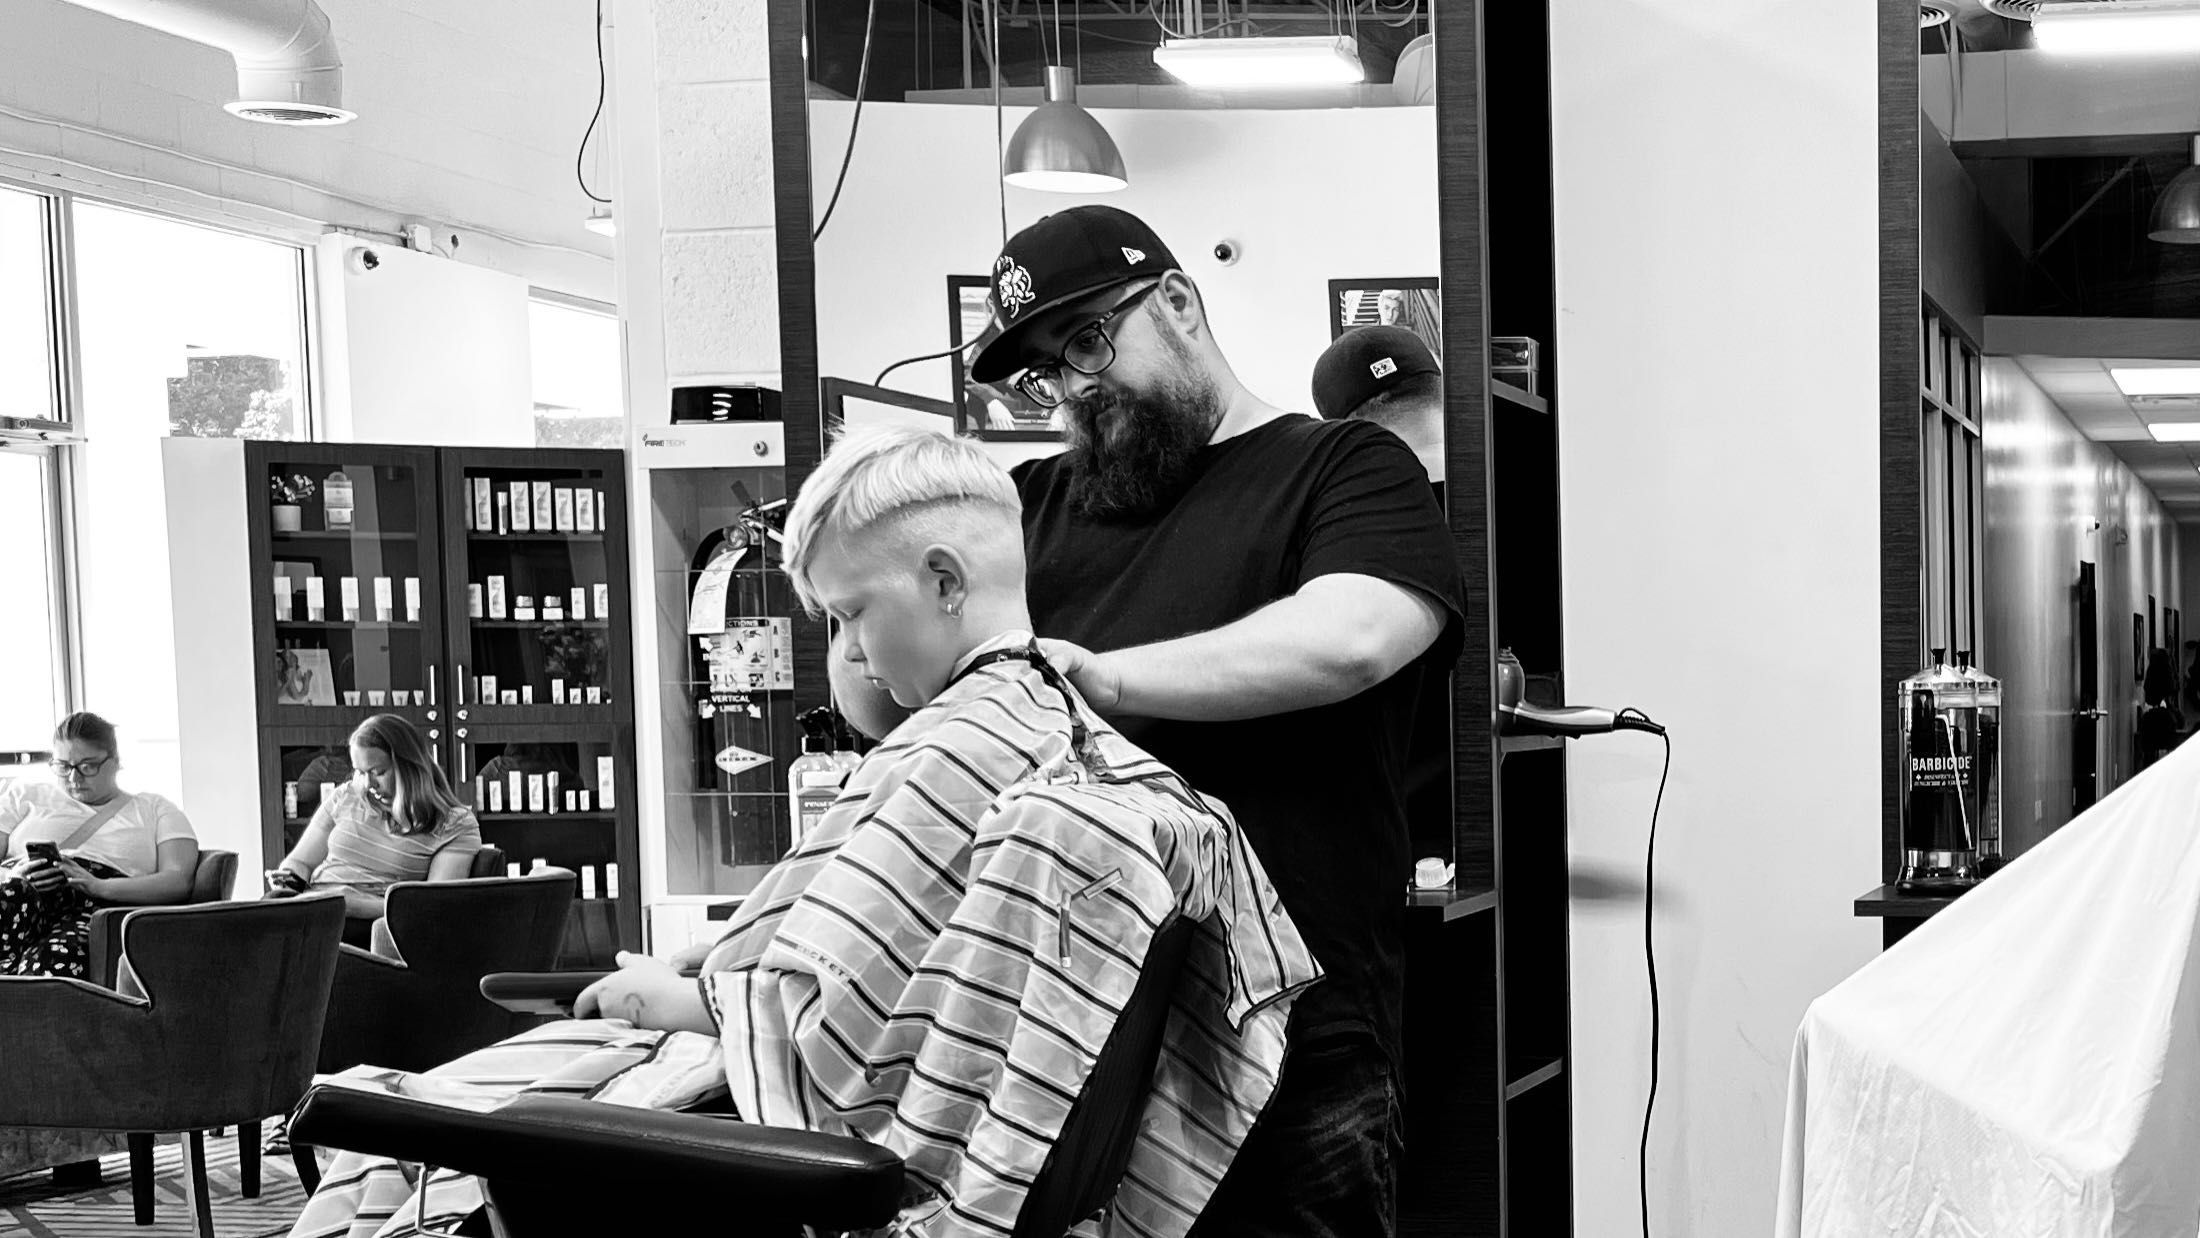 Barbershops Near Me in Oakley  Find Best Barbers Open Near You!